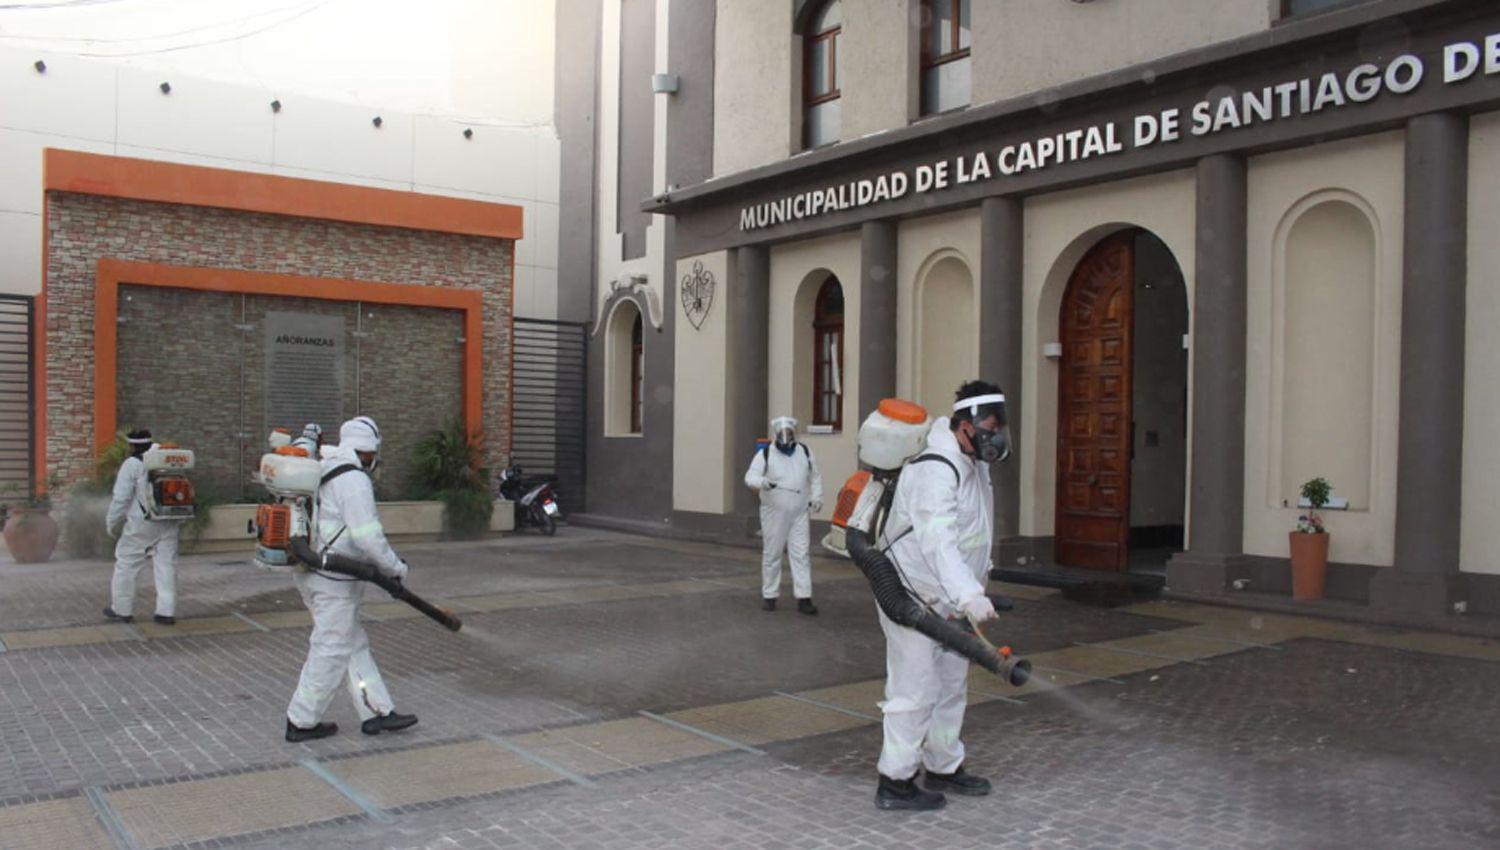 La Municipalidad de la Capital realizoacute la sanitizacioacuten de edificios puacuteblicos